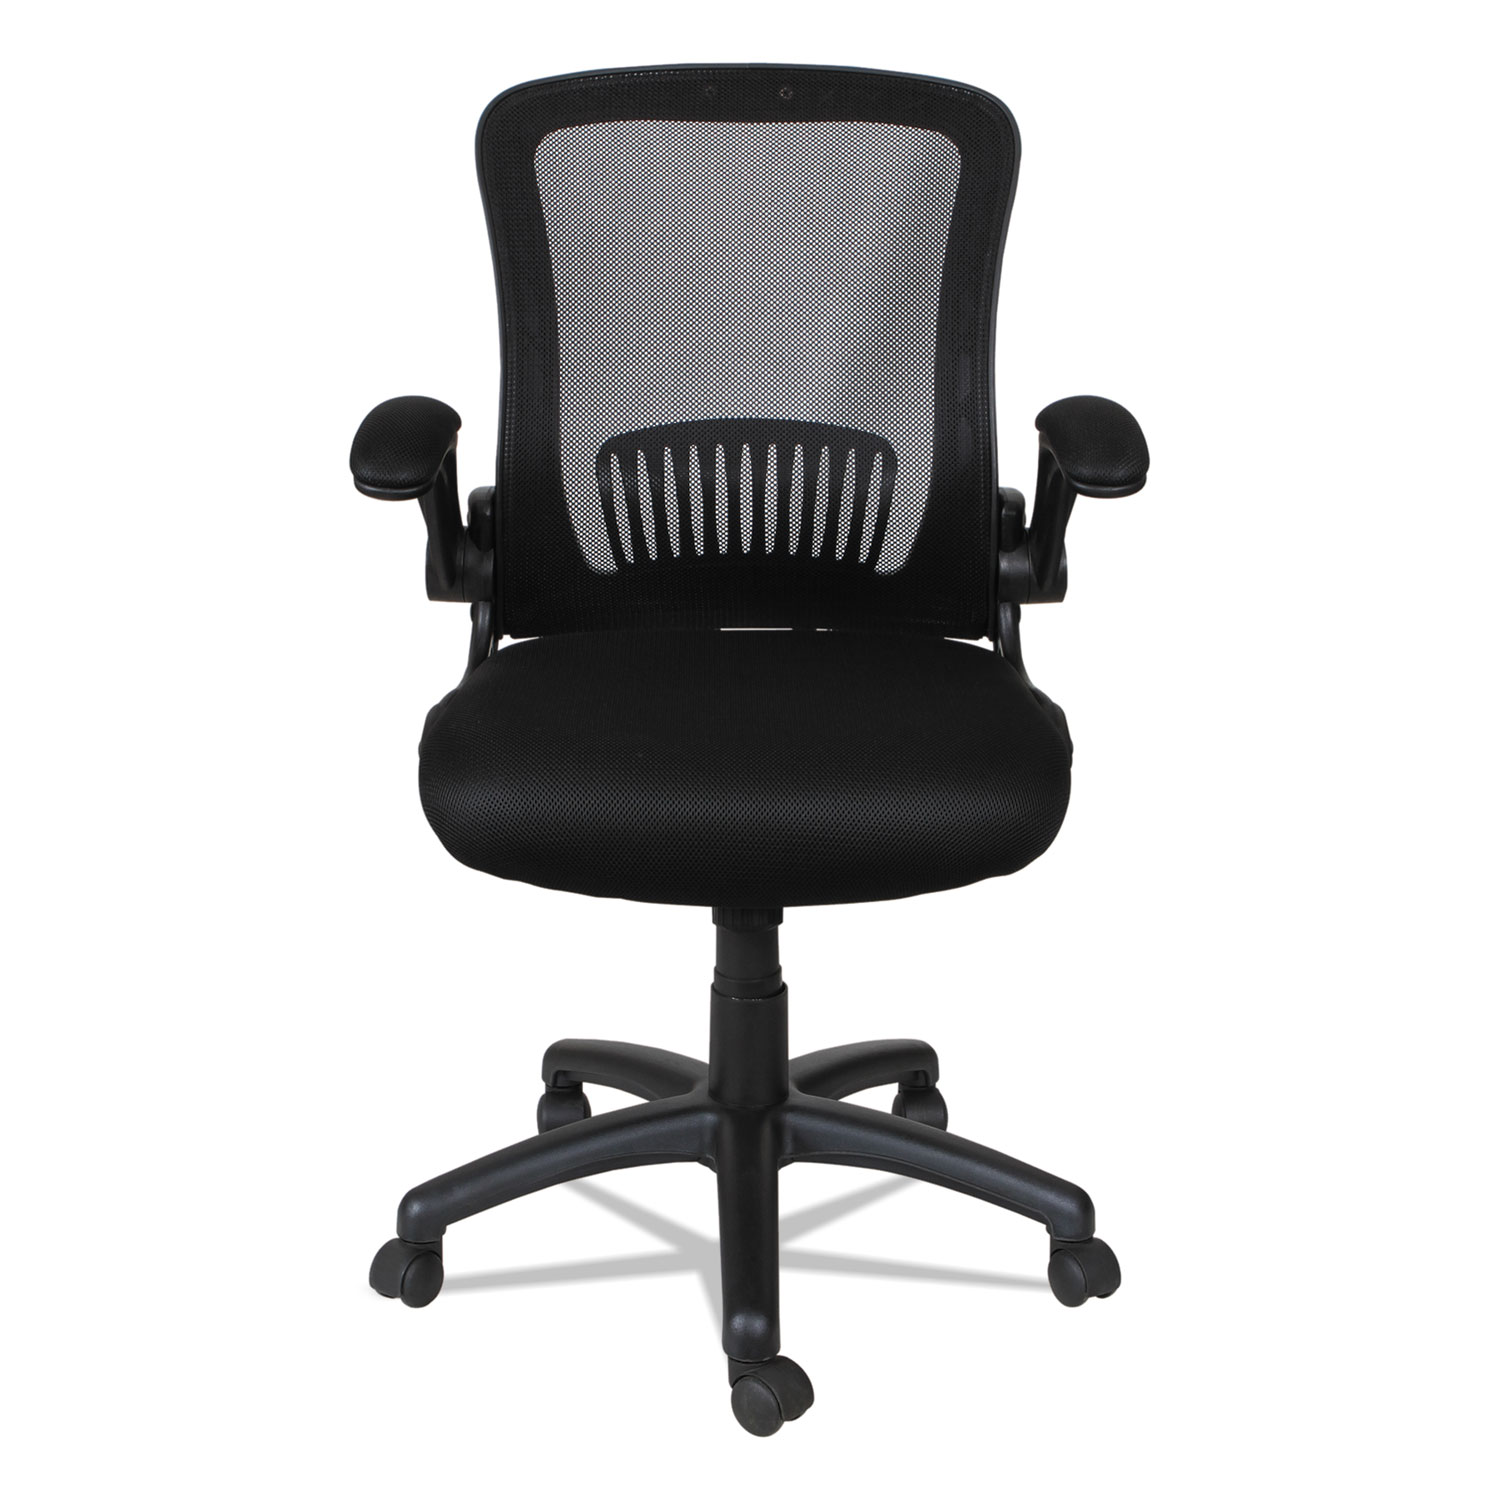 EB-E Series Swivel/Tilt Mid-Back Mesh Chair, Black